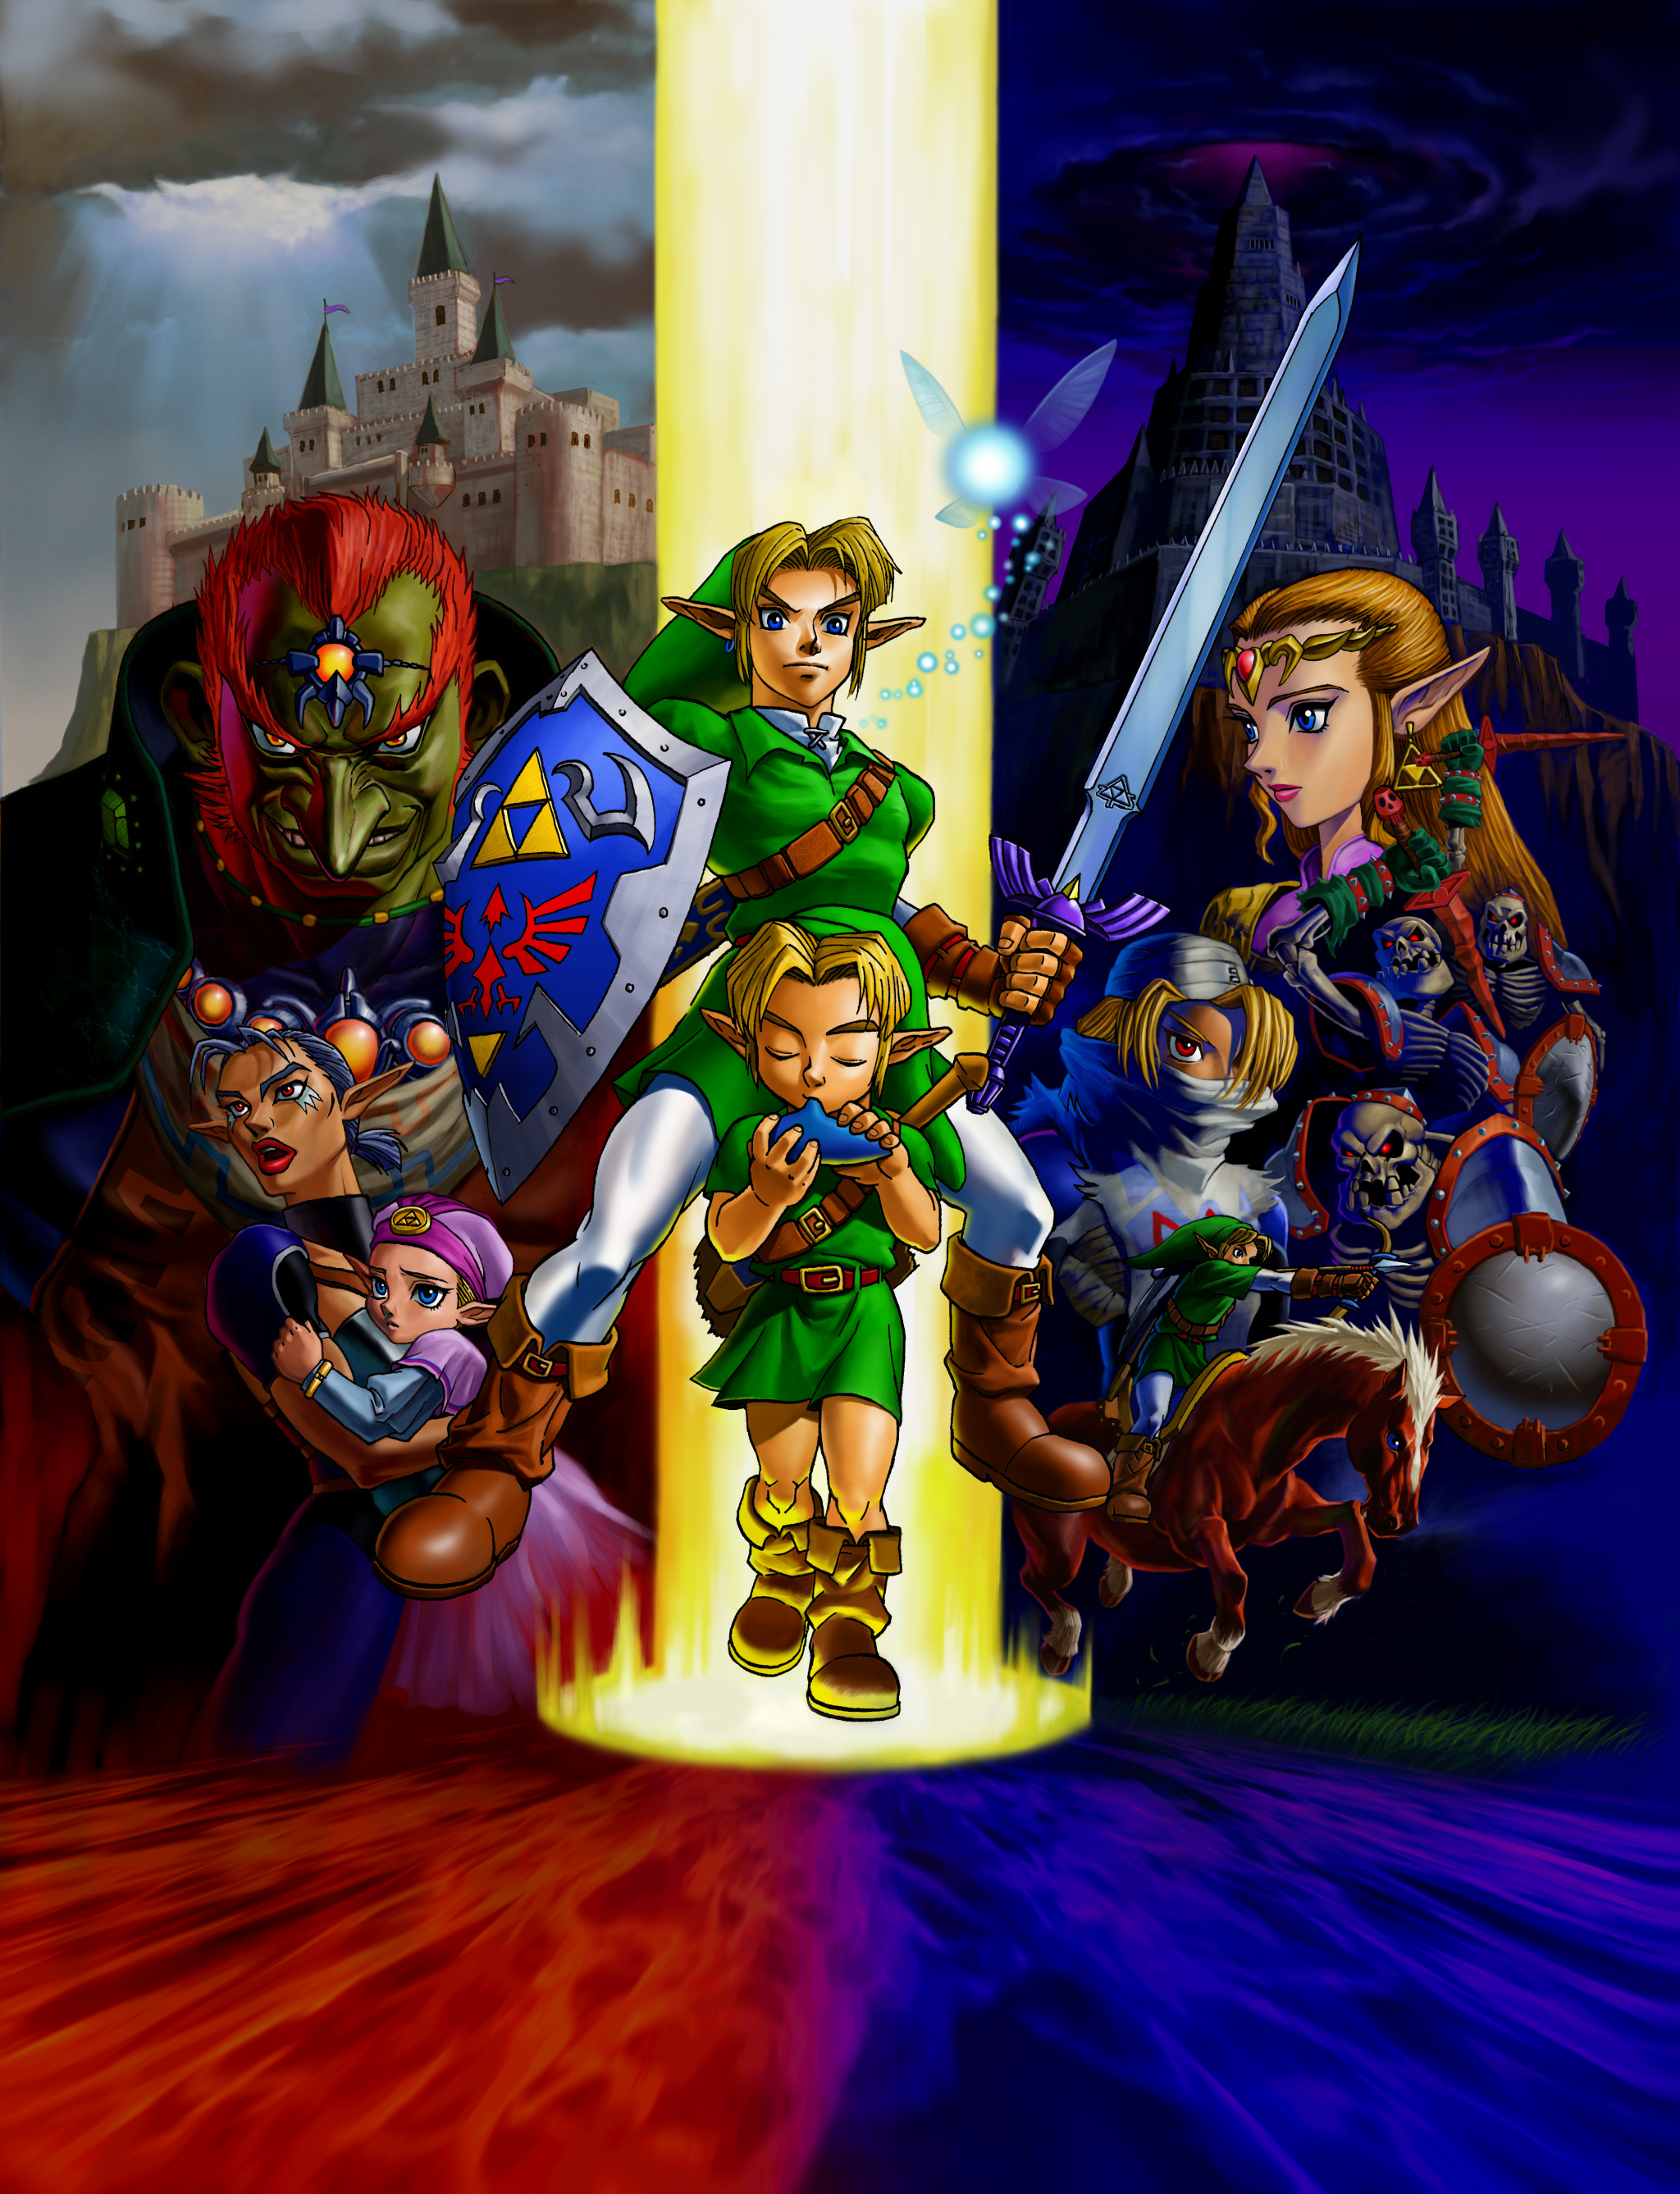 Una versione ad alta risoluzione dell'artwork di The Legend of Zelda: Ocarina of Time omaggiato in occasione del torneo online di Super Smash Bros. Ultimate.